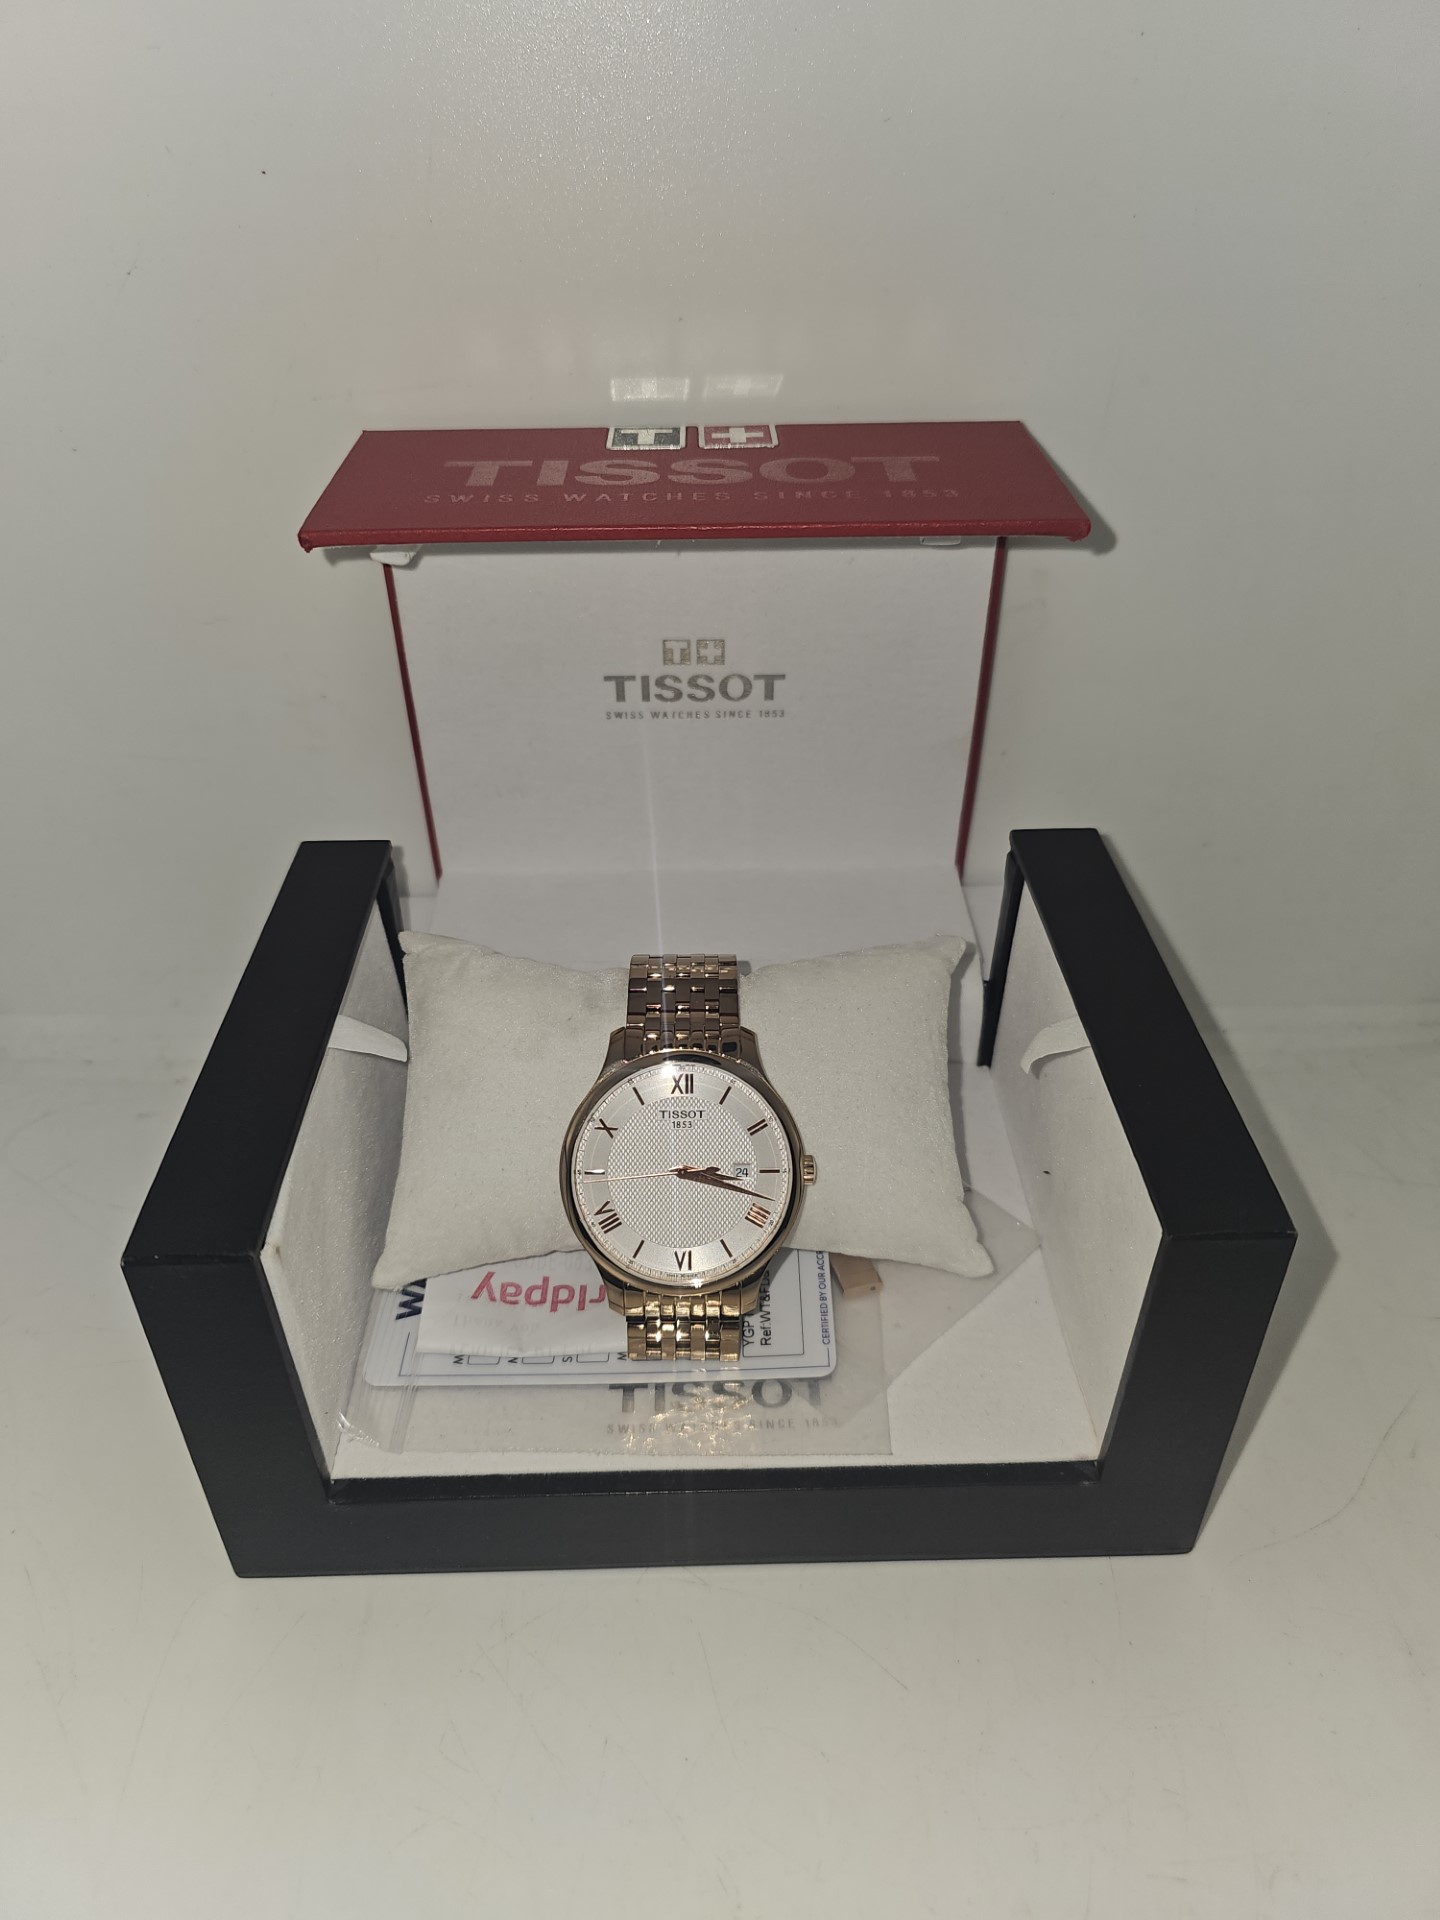 Tissot - T063610 - Boxed - No Receipt